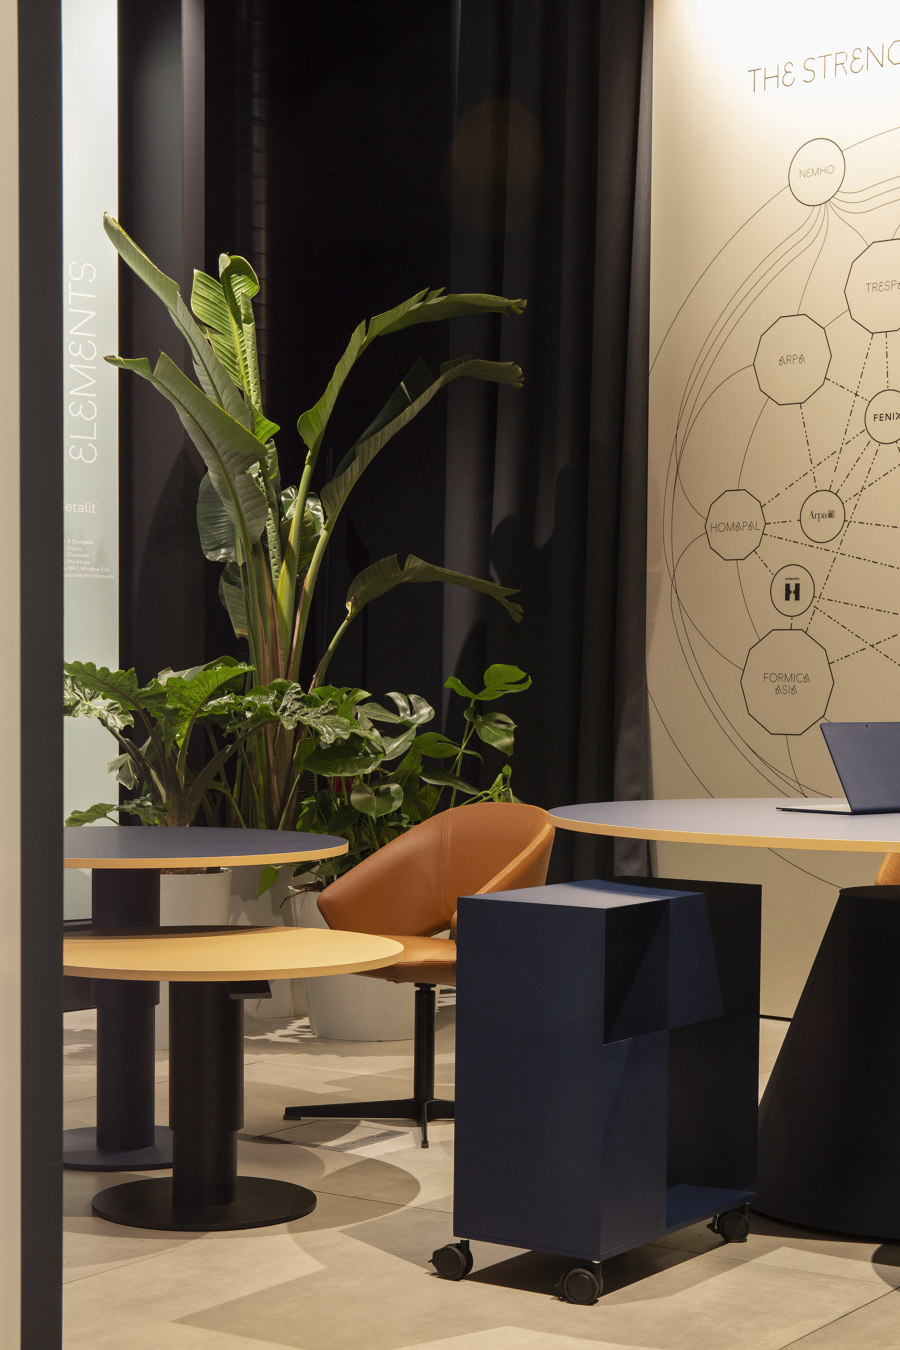 Mara’s Milan manifesto: designing furniture that makes us feel | Novedades